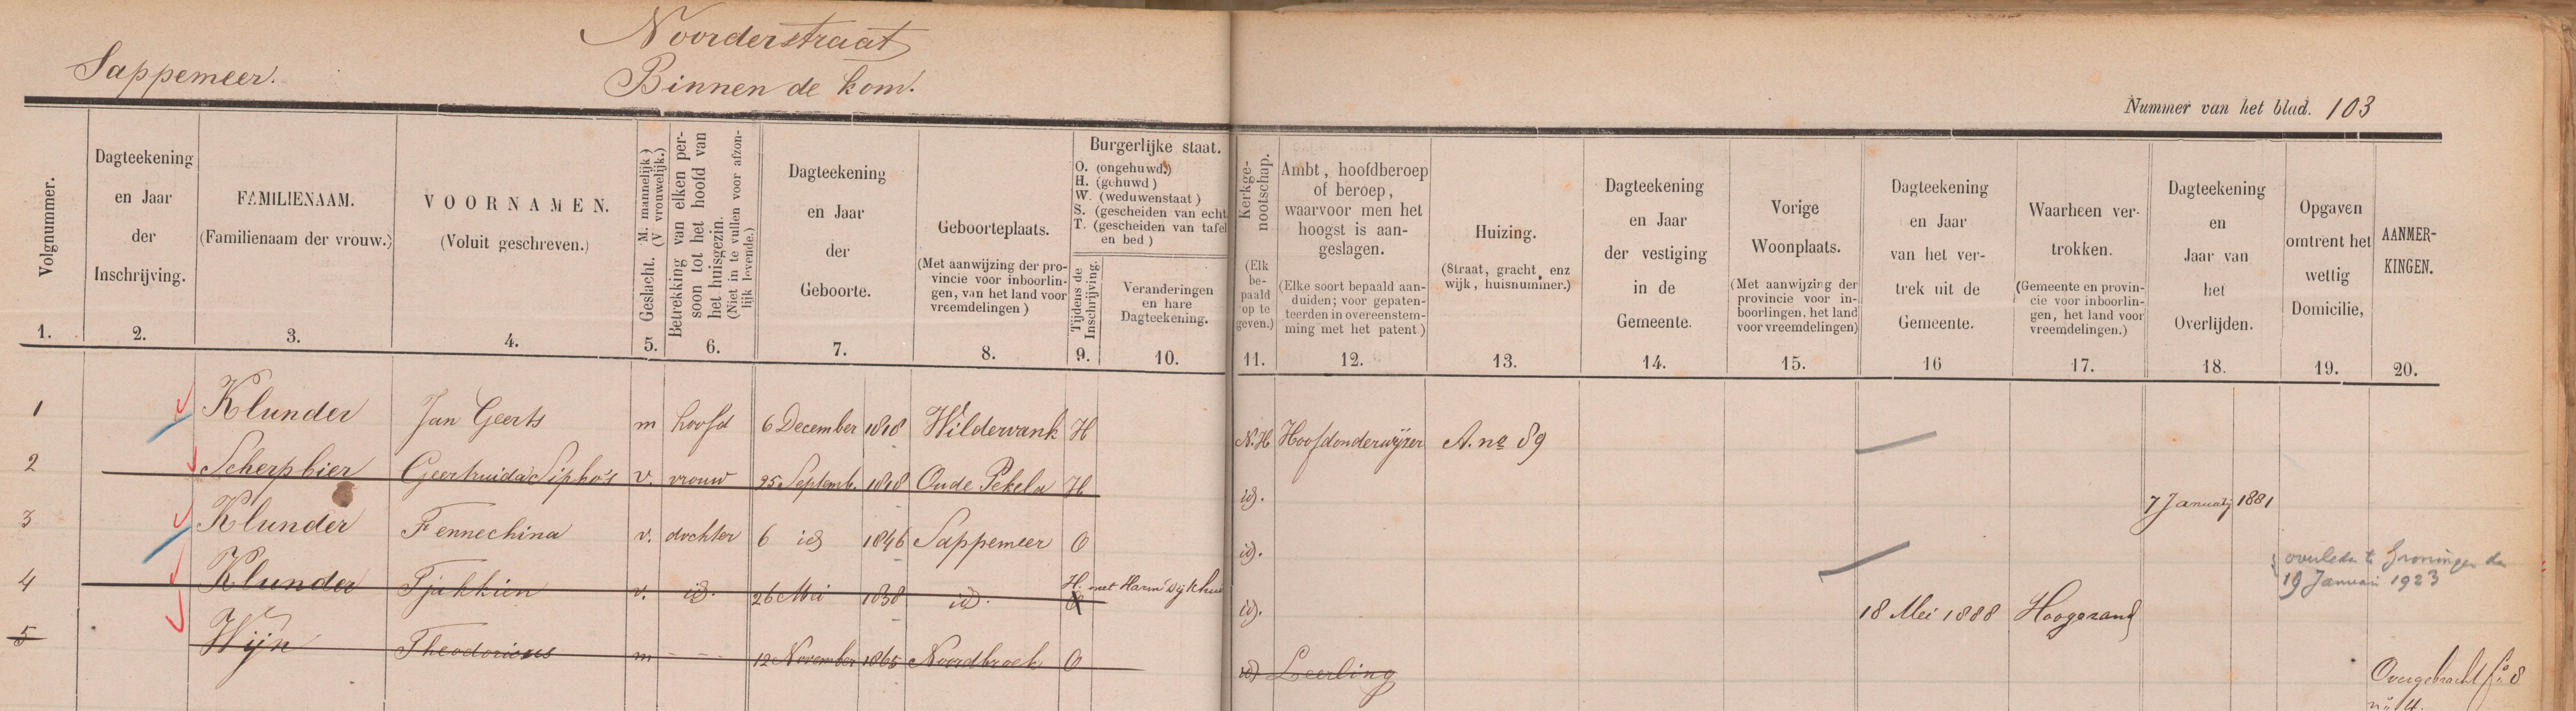 Inschrijving in het bevolkingsregister van Jan Geerts Klunder als hoofd van zijn gezin (en leerling) in de Noorderstraat nr. 89.